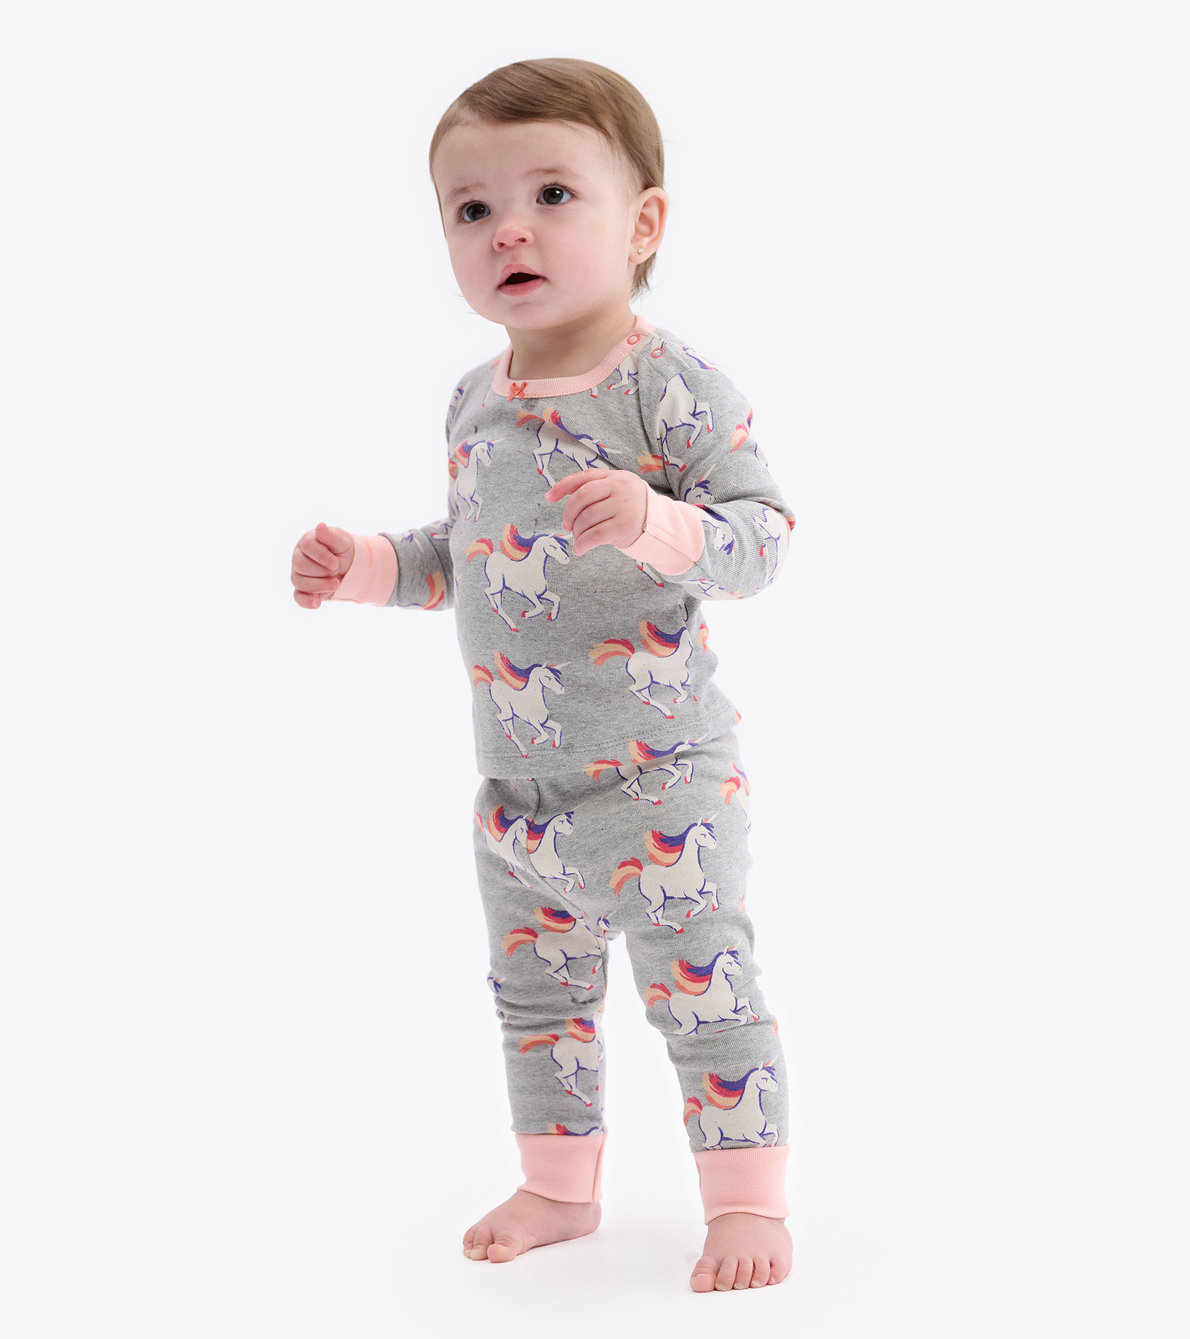 View larger image of Galloping Unicorn Baby Pajama Set